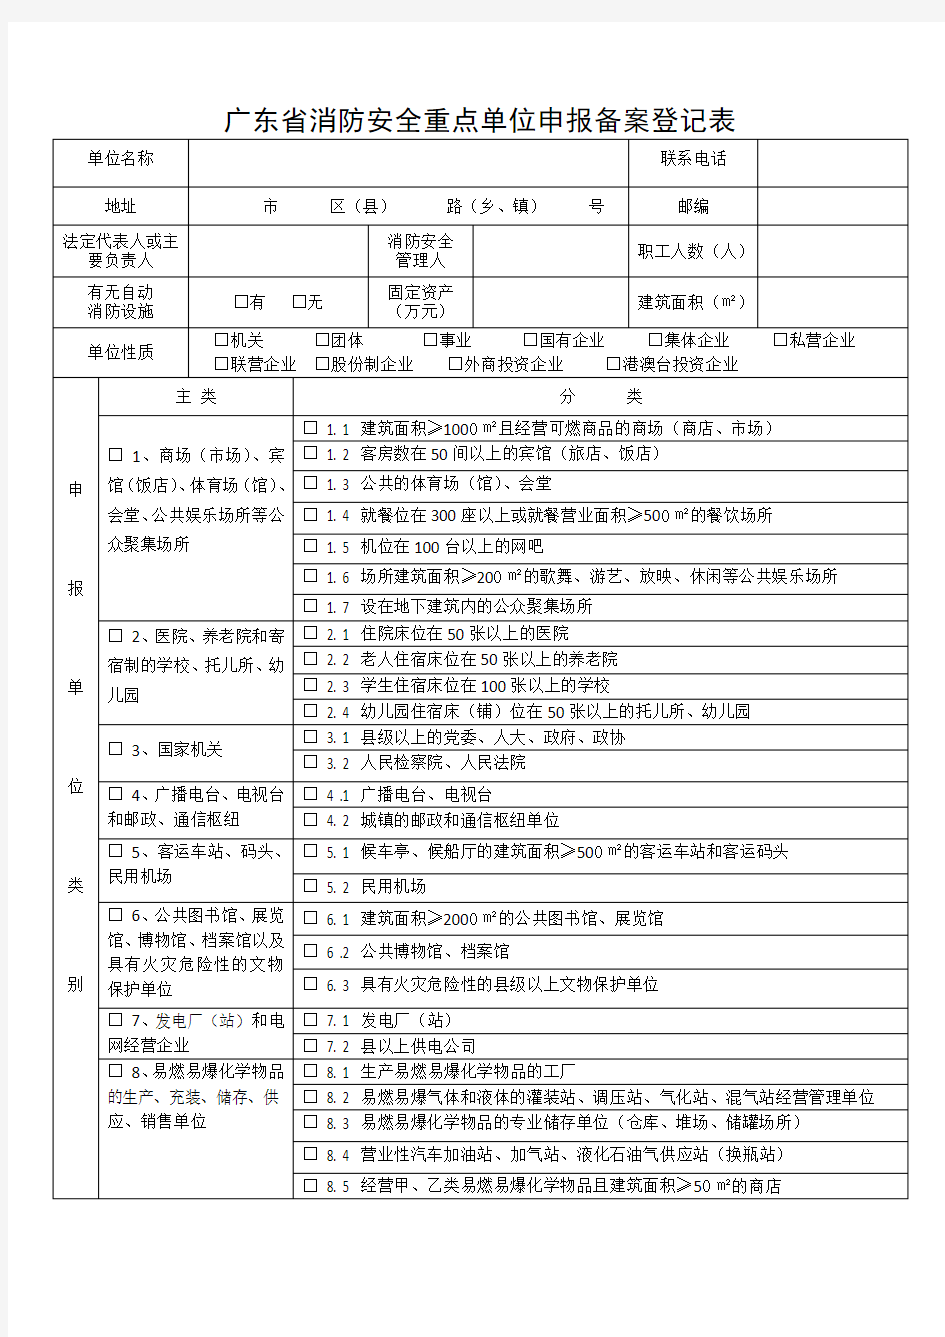 广东消防安全重点单位申报备案登记表